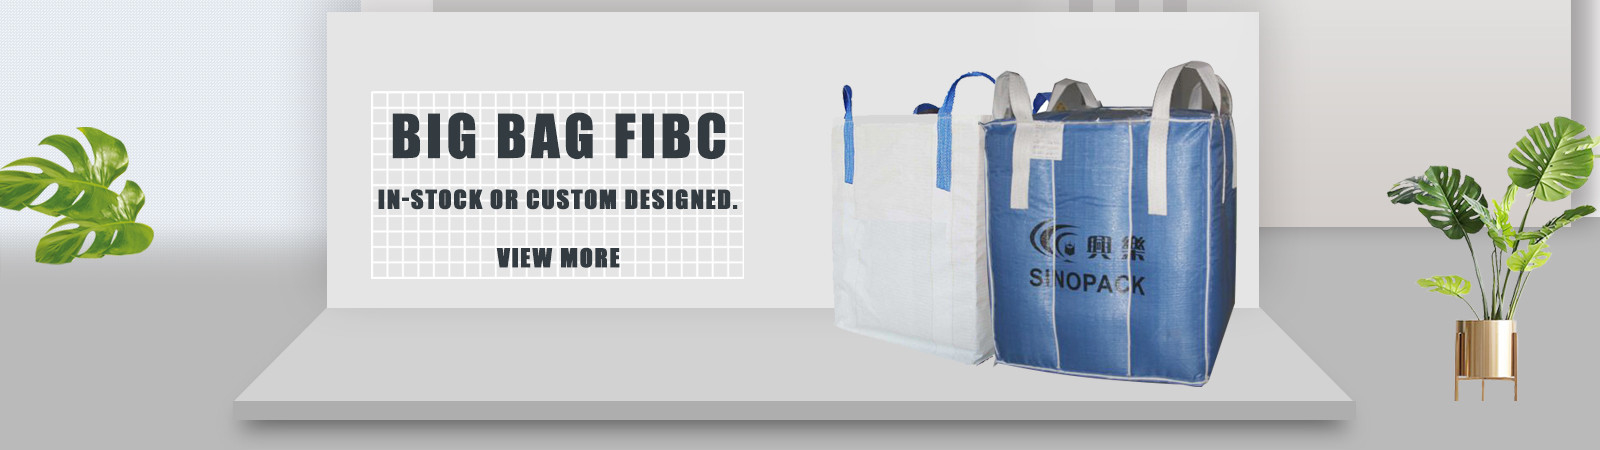 गुणवत्ता बिग बैग FIBC कारखाना